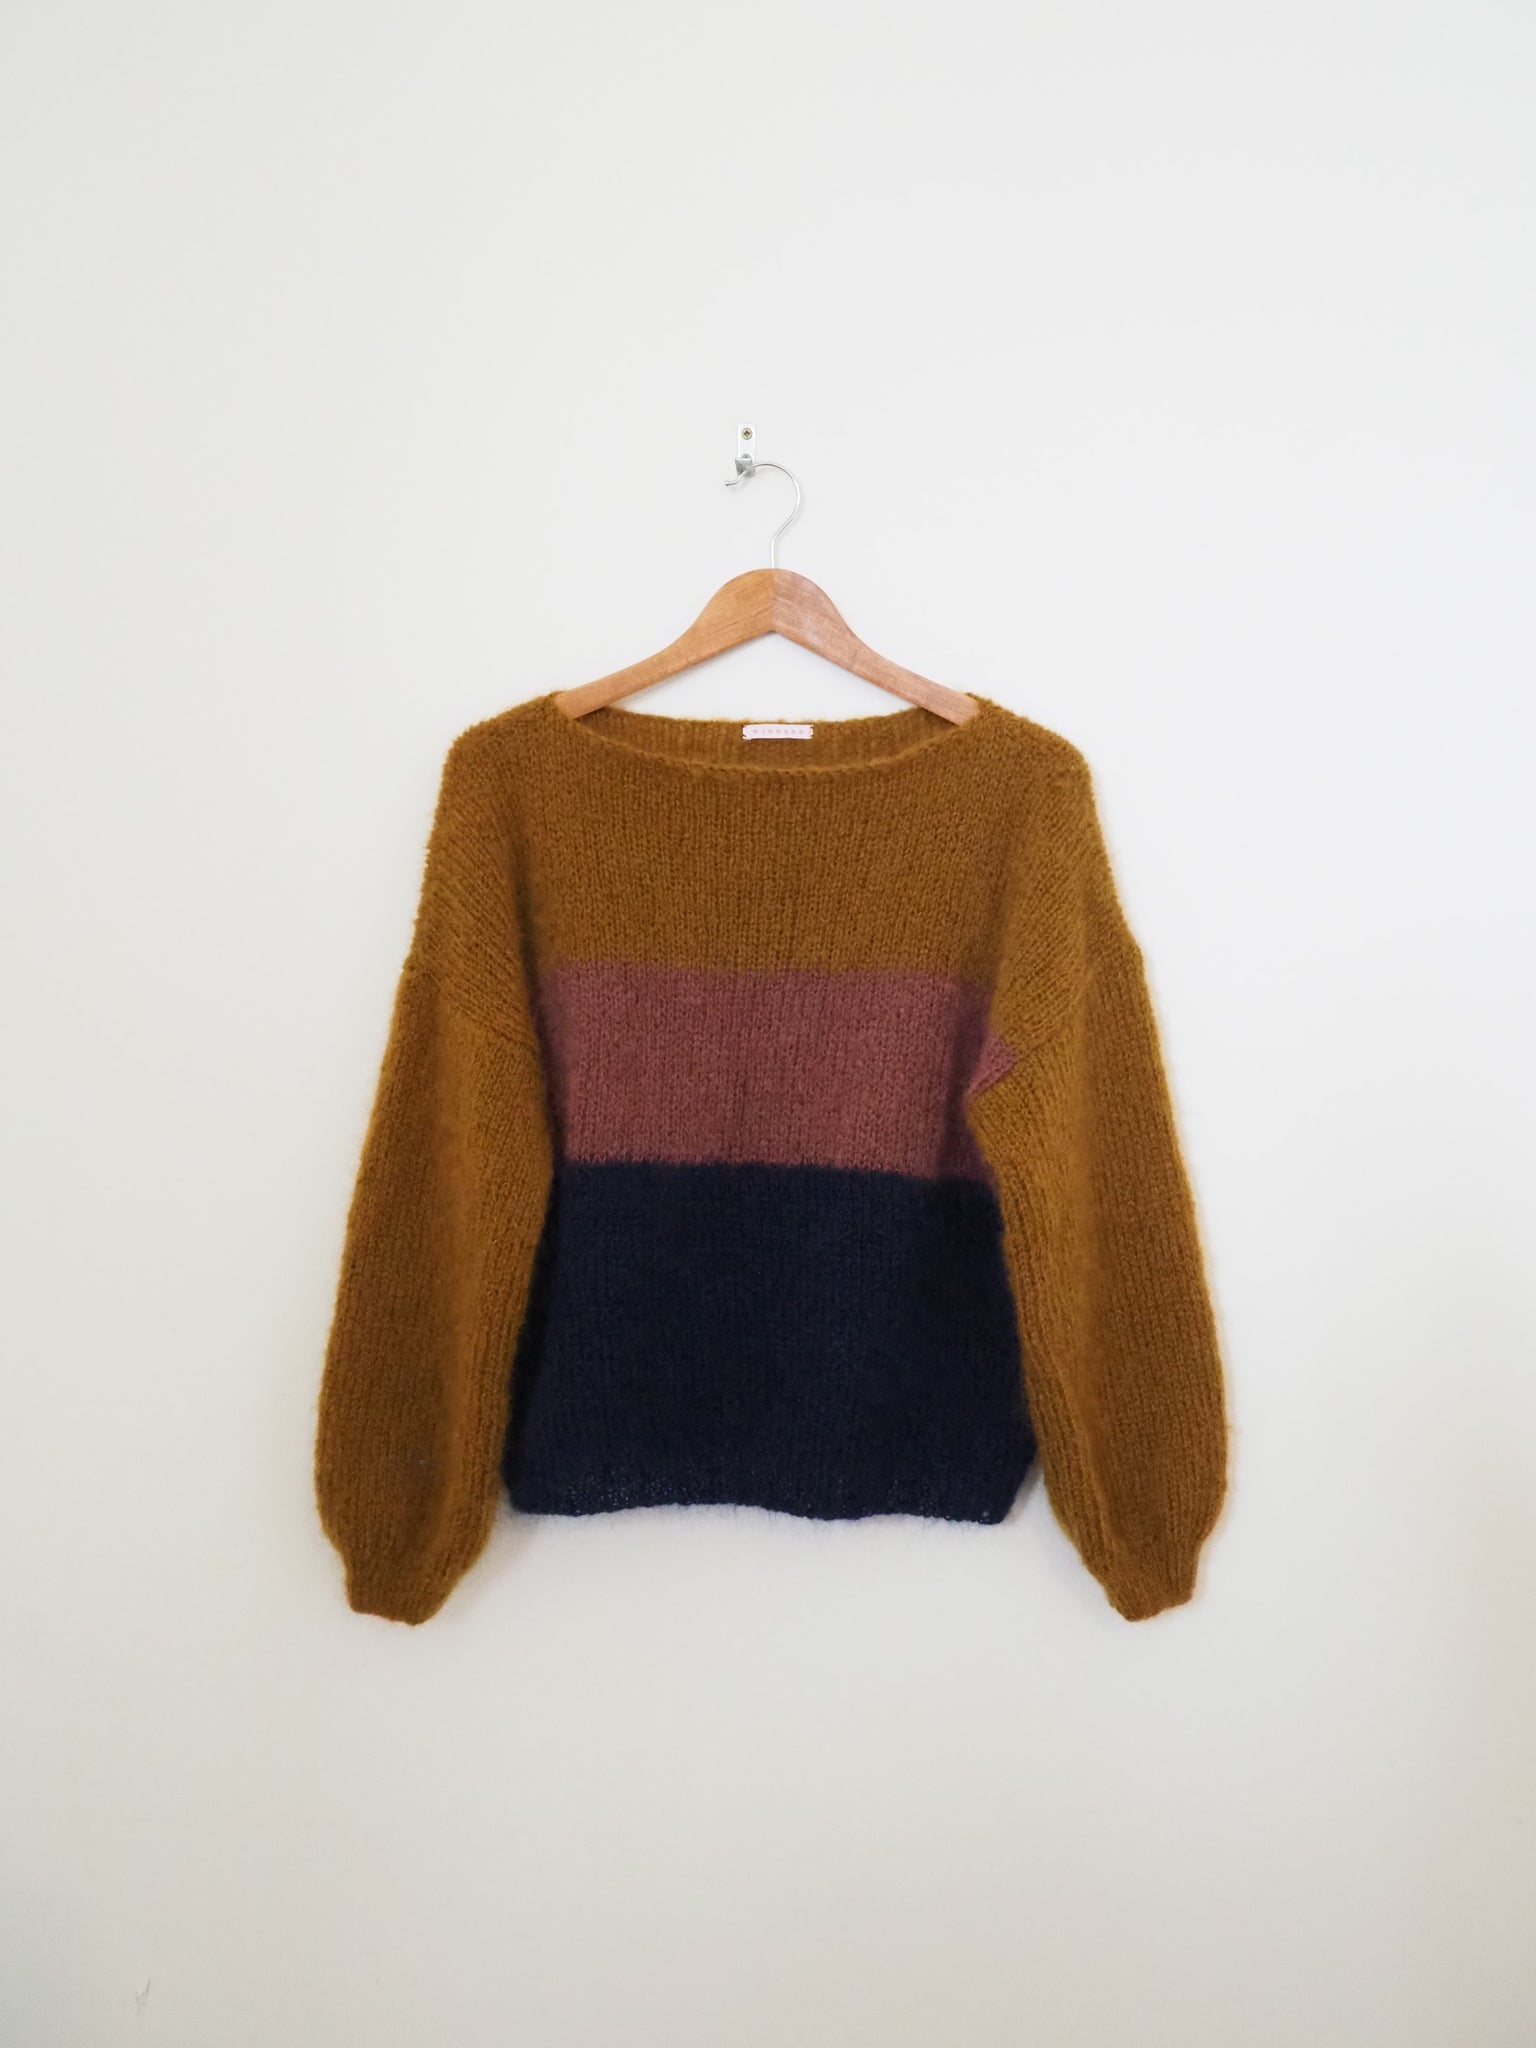 Hand knit jumper - Warm tones